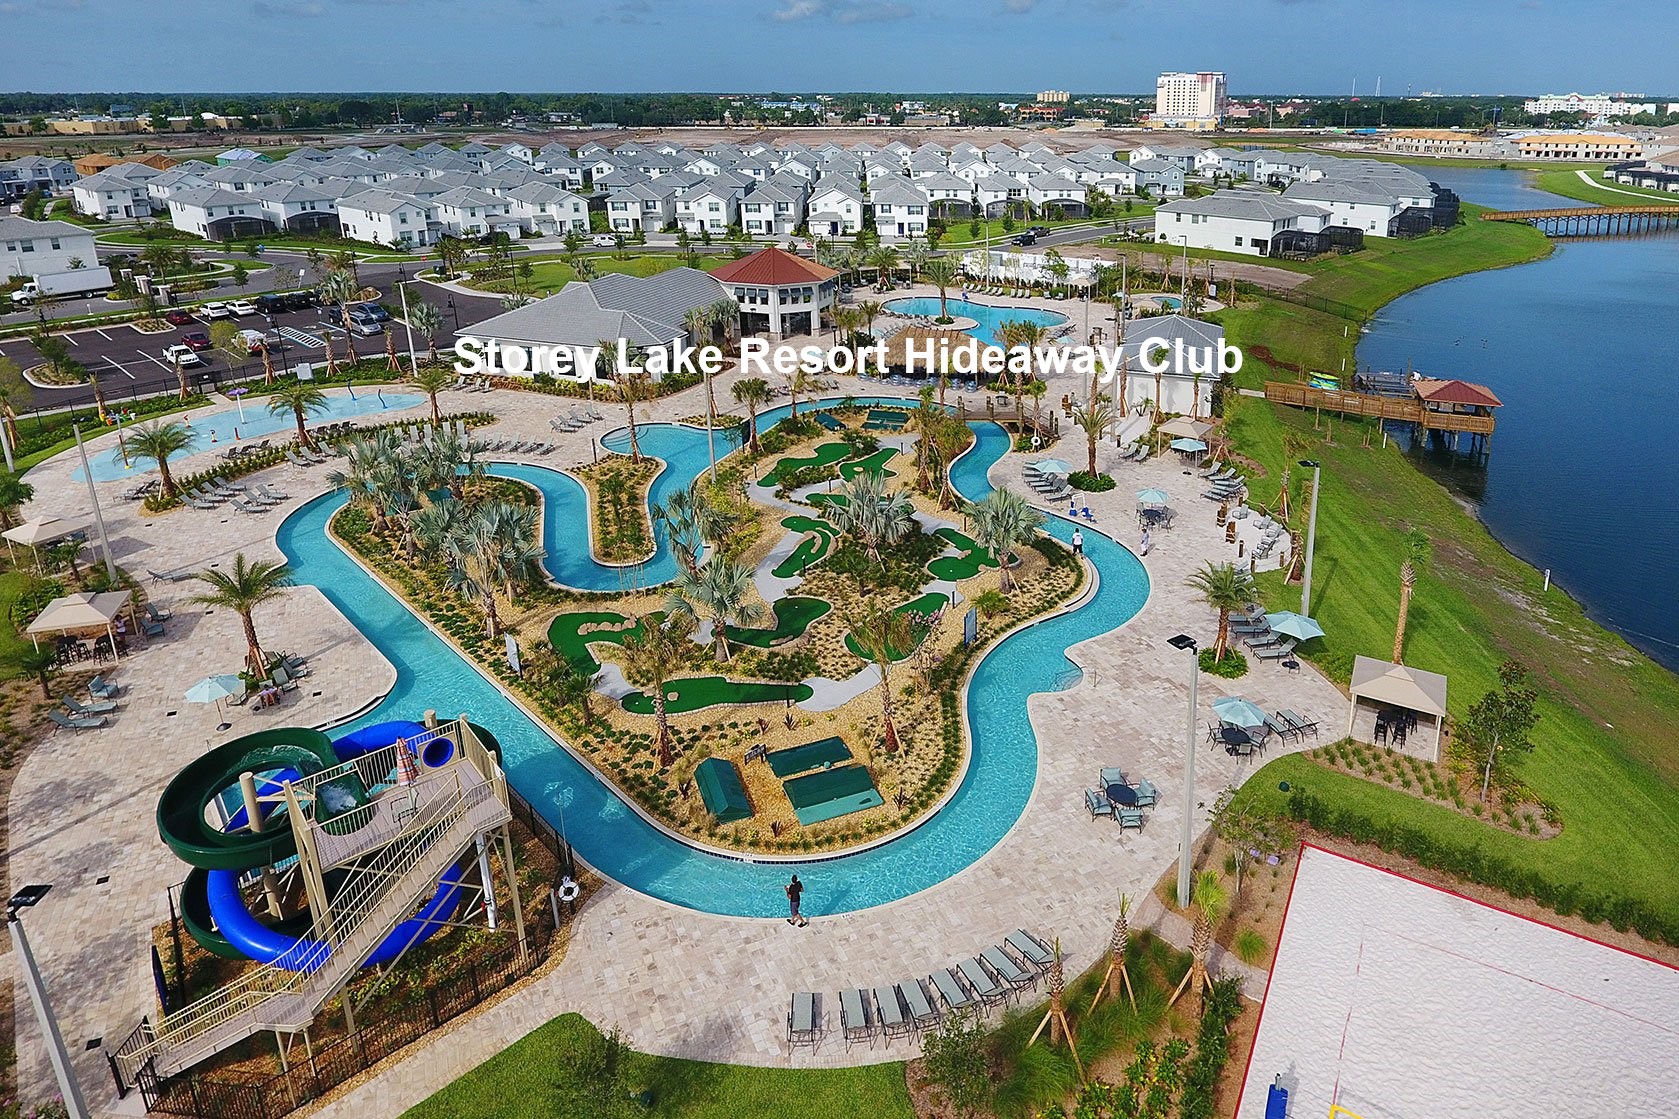 3 Storey Lake Resort Hideaway Club